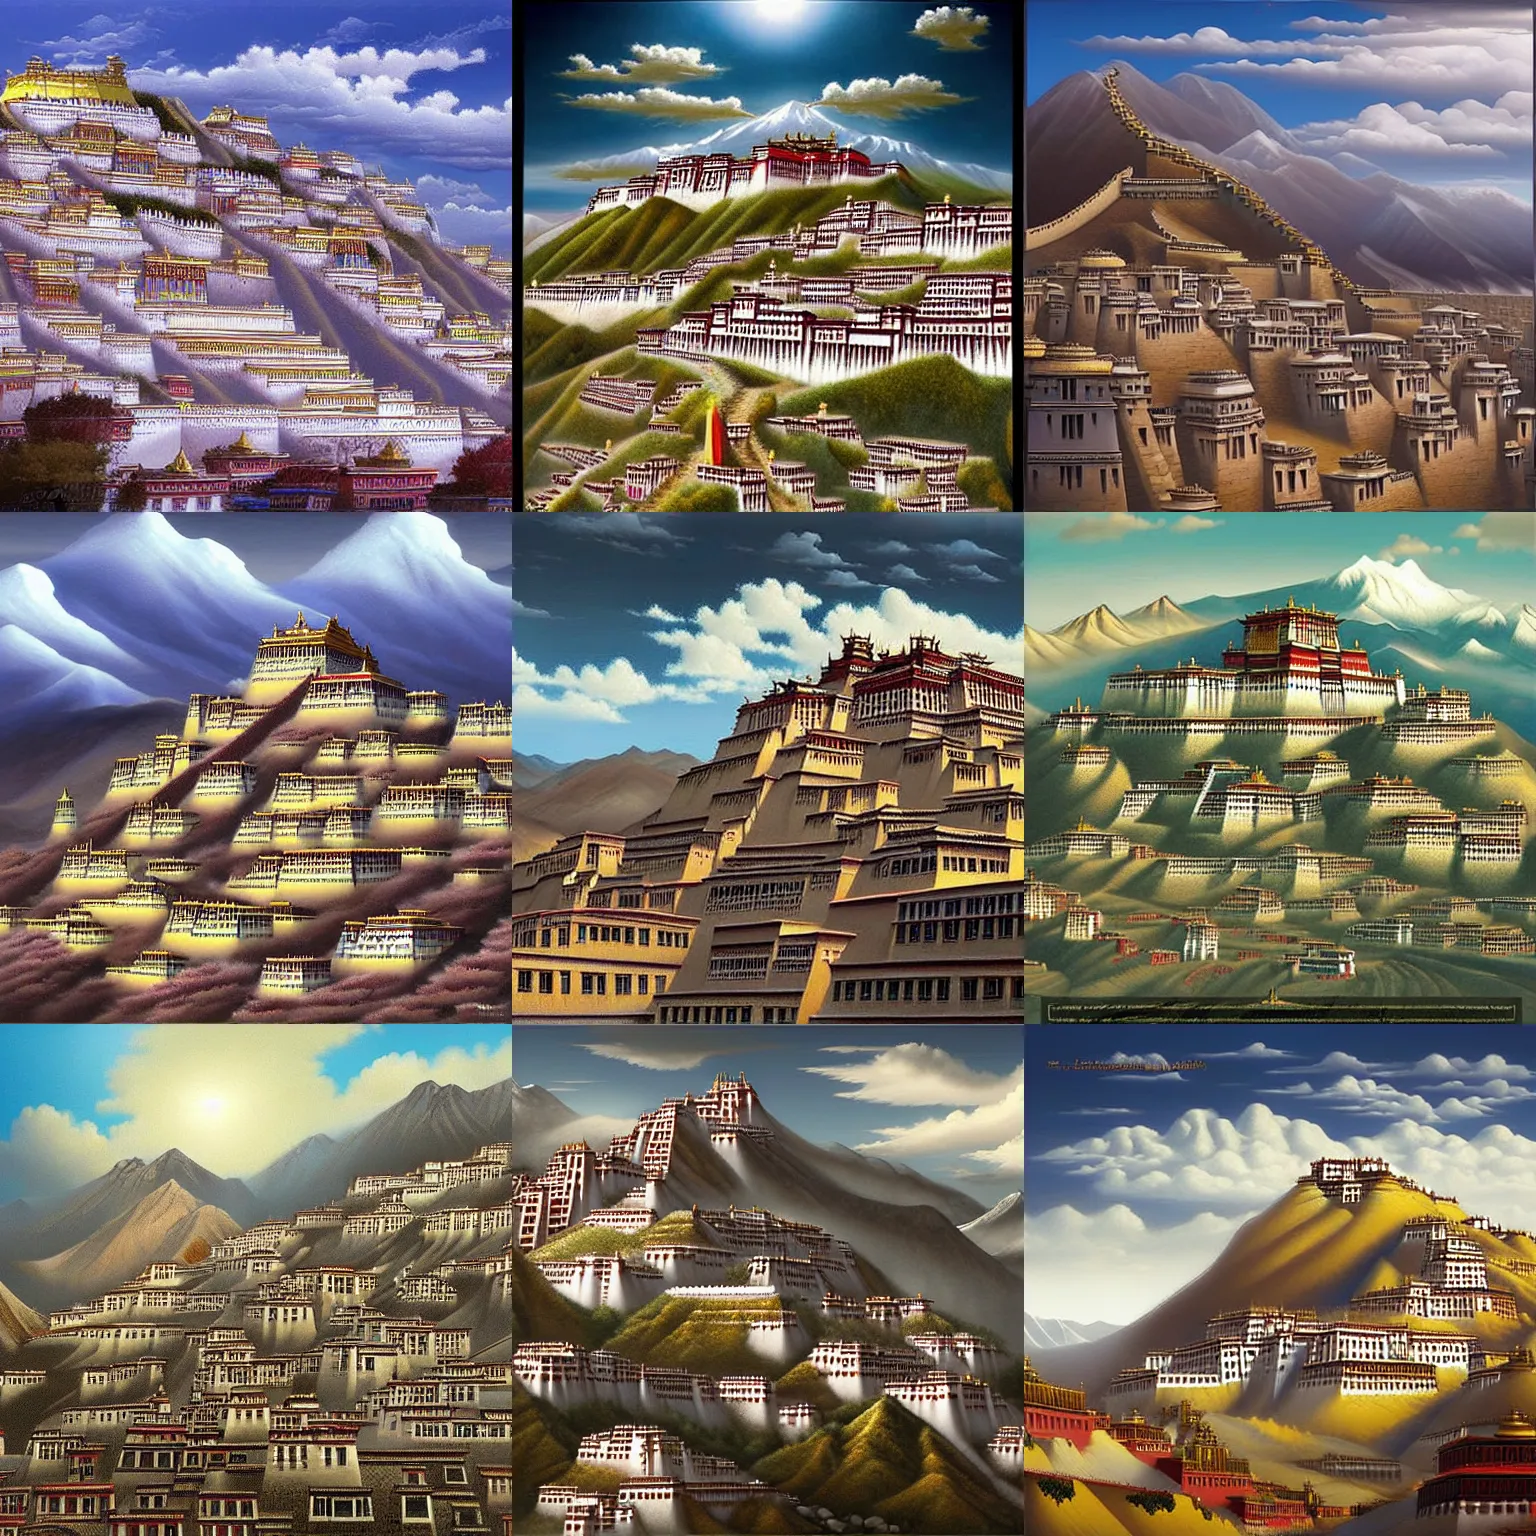 Prompt: digital art of lhasa, tibet. by vladimir kush, trending on artstation, high quality artwork, neogothic style.